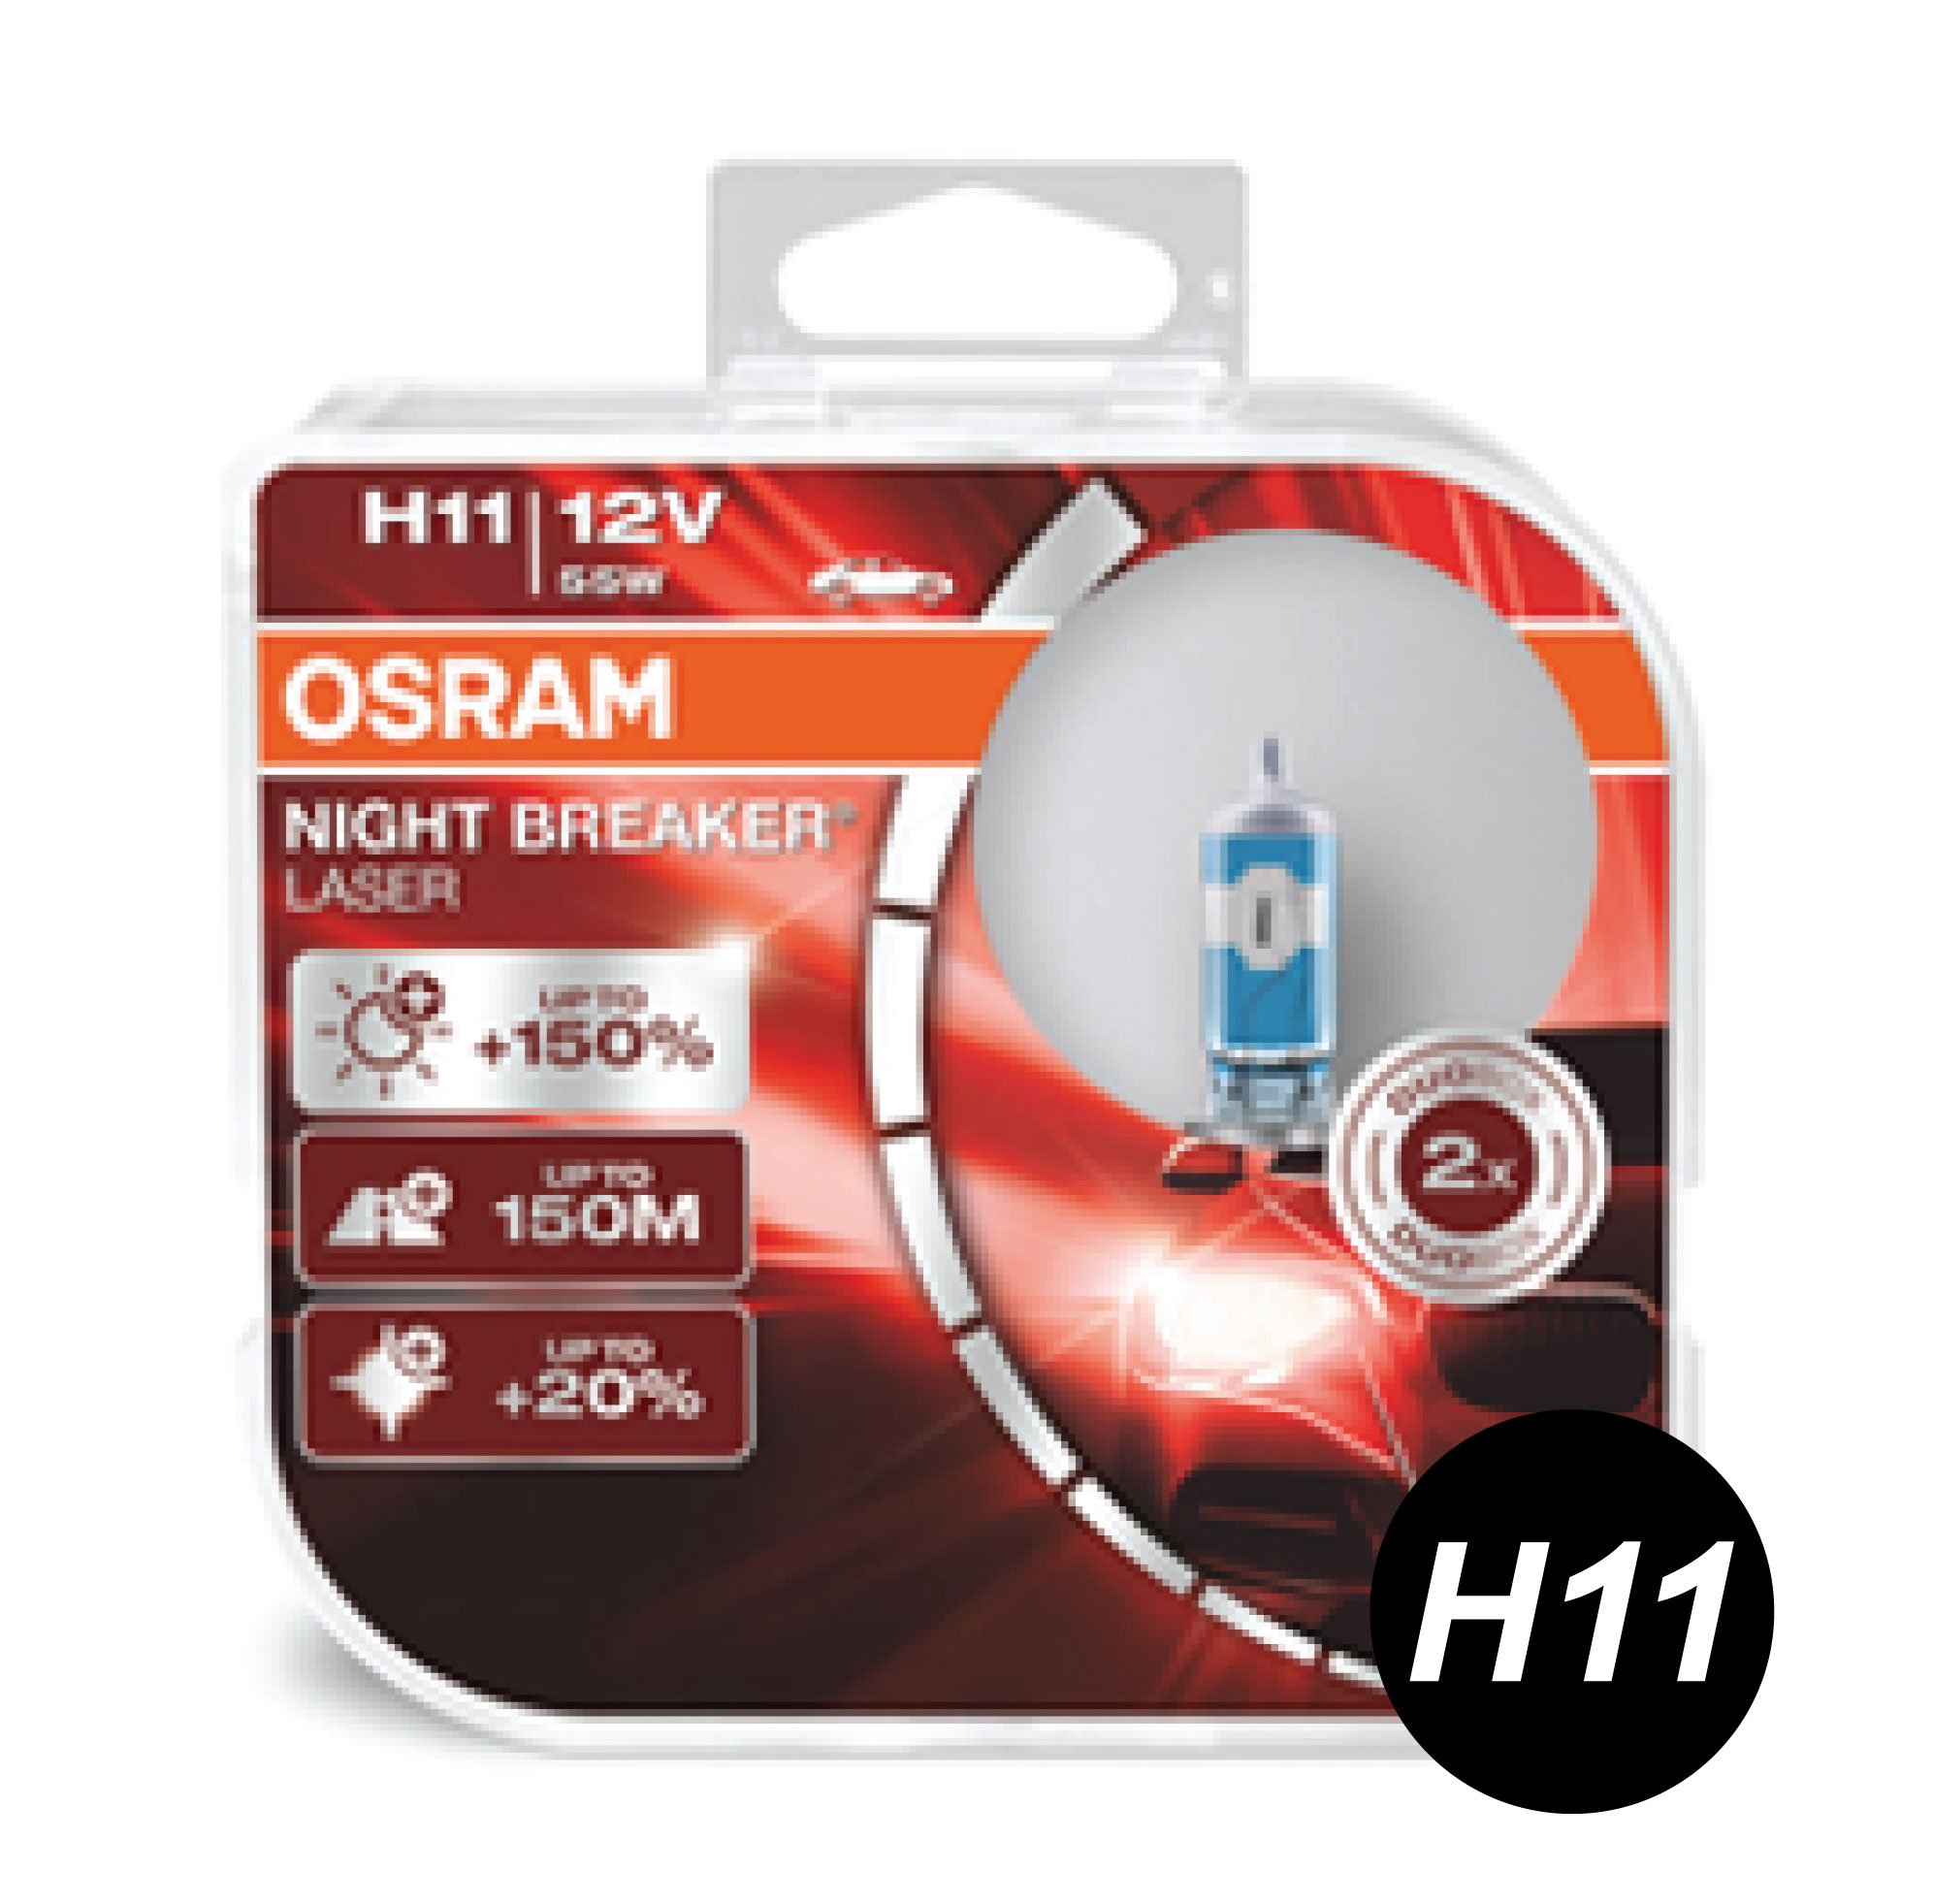 ORIGINAL OSRAM Night Breaker Laser 4TH Gen Bulb Light Headlamp Lamp H1 H3 H4 H7 H8 H11 HB3 9005 HB4 9006 Lampu Mentol